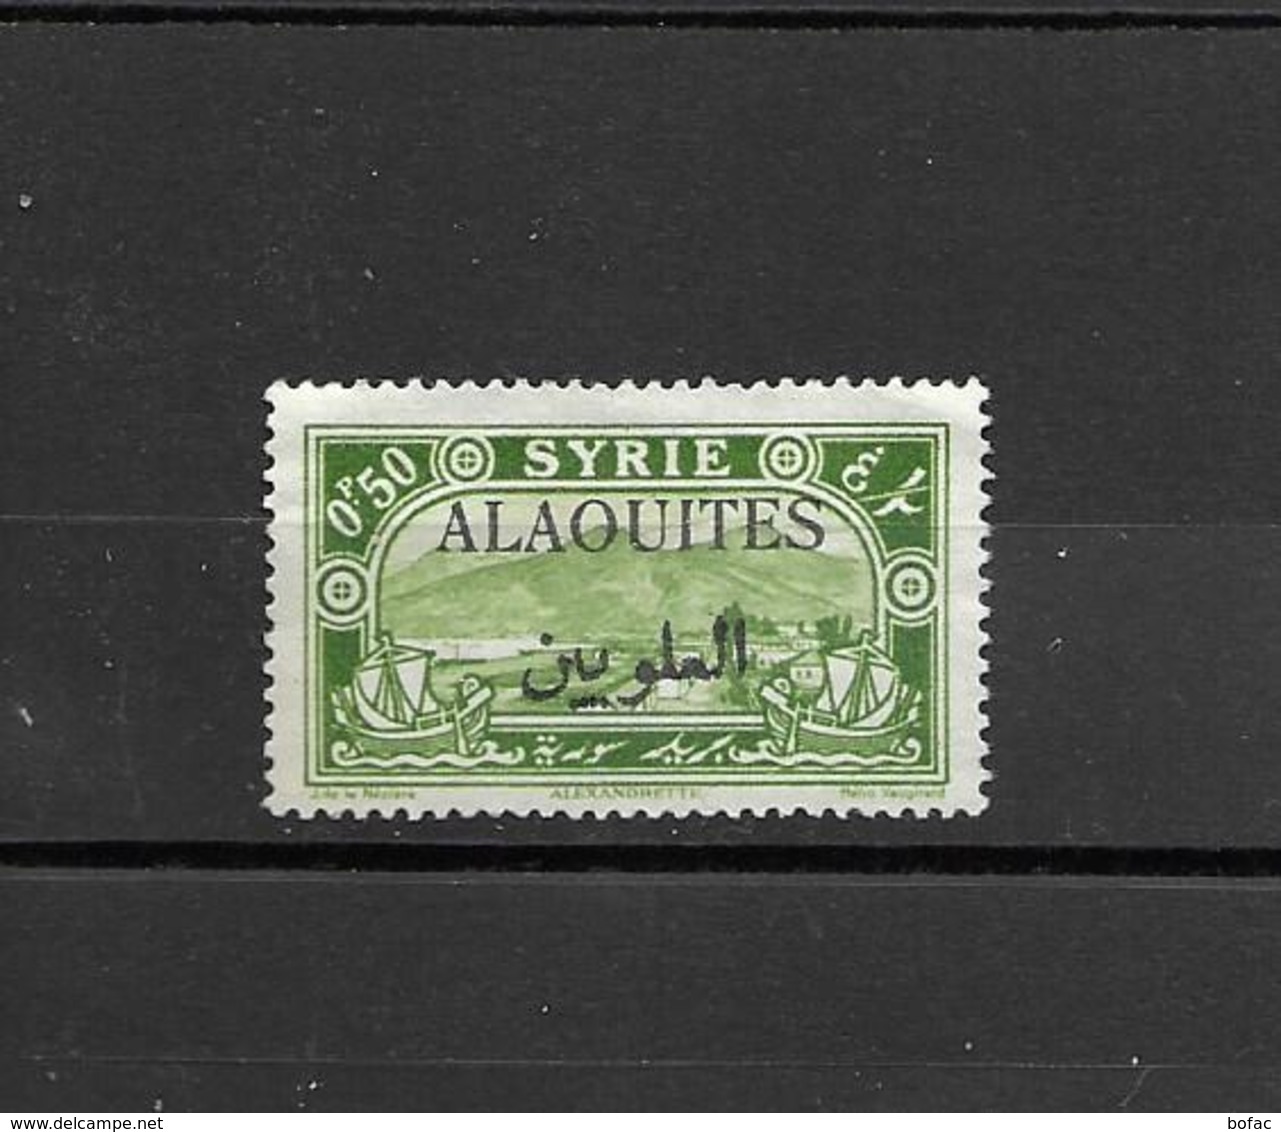 22 OBL Y & T  Timbres De Syrie De 1925 Surchargés  *ALAOUITES* Colonie*  16/43 - Used Stamps